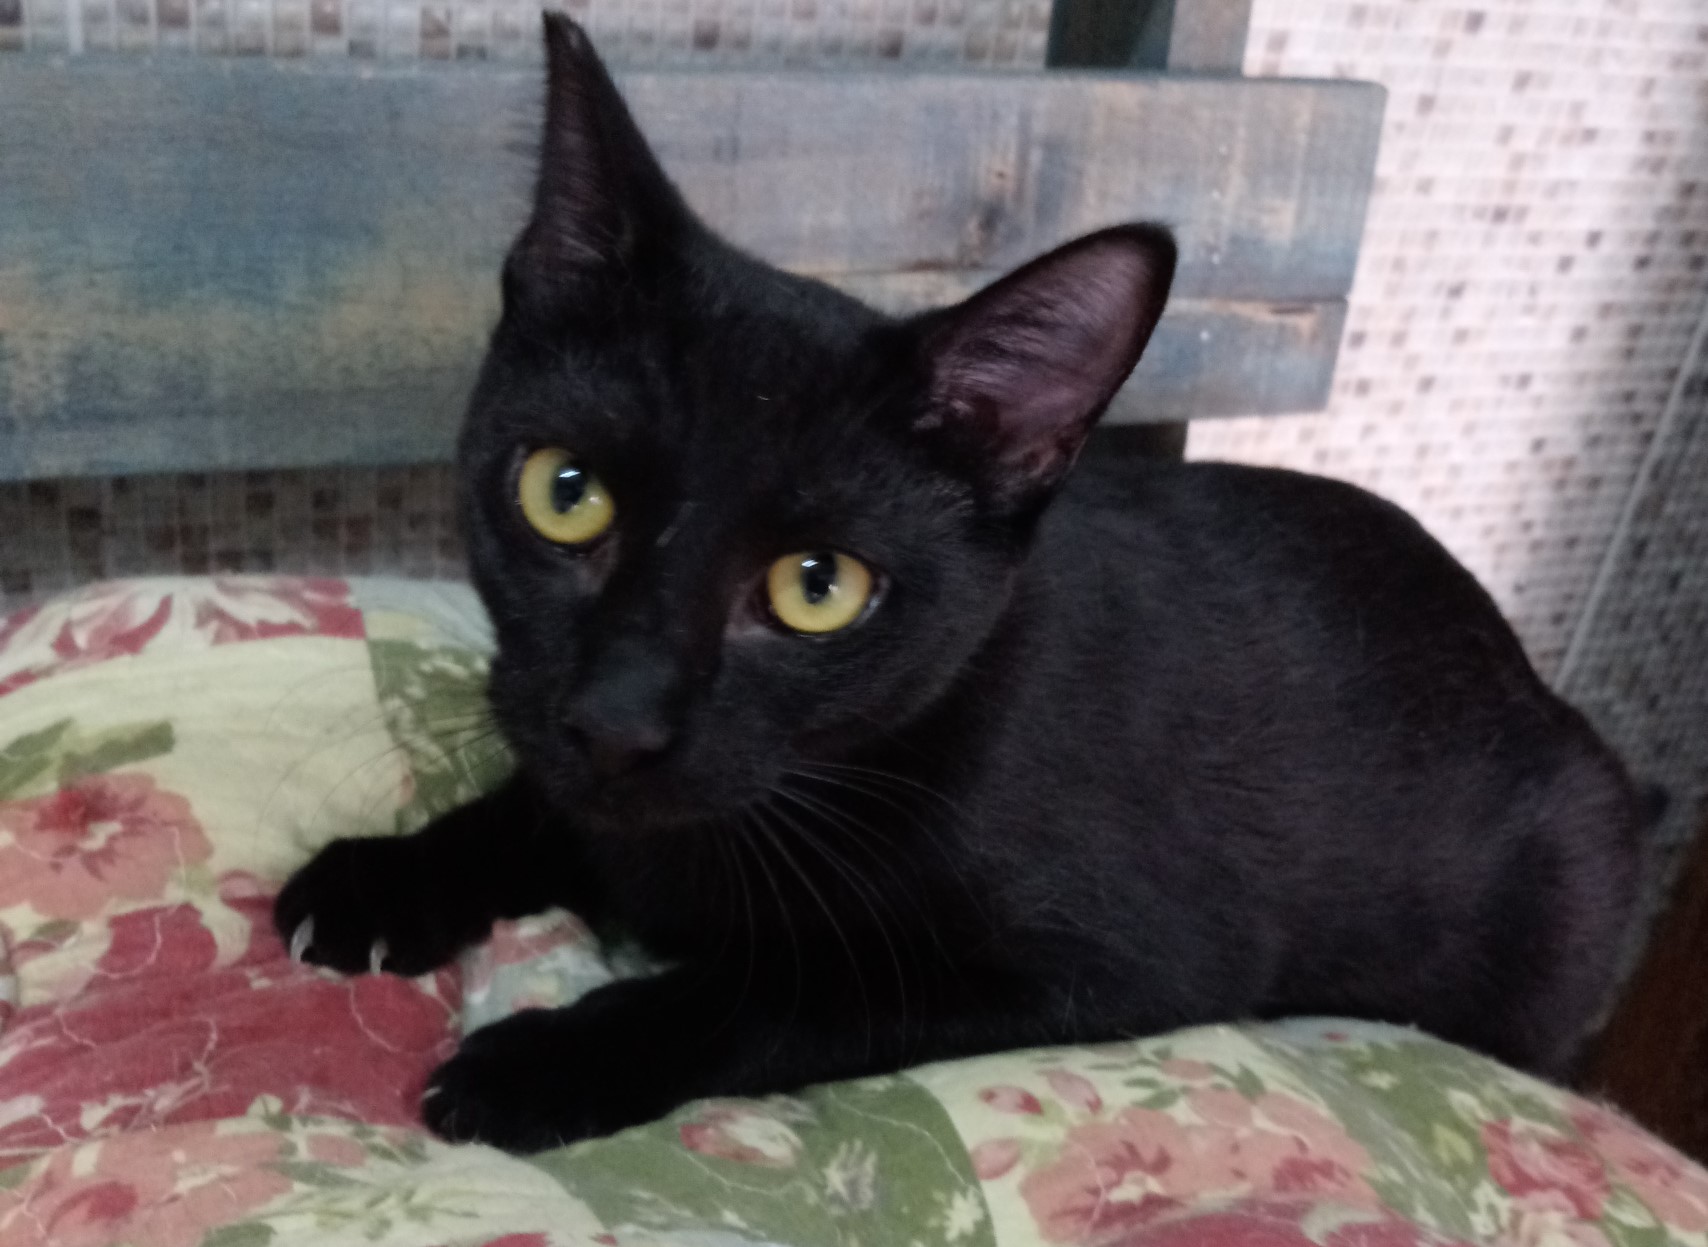 Fotografia da gatinha Nickita. Ela é toda preta e tem os olhos amarelos. Ela está olhando fixamente para a câmera.